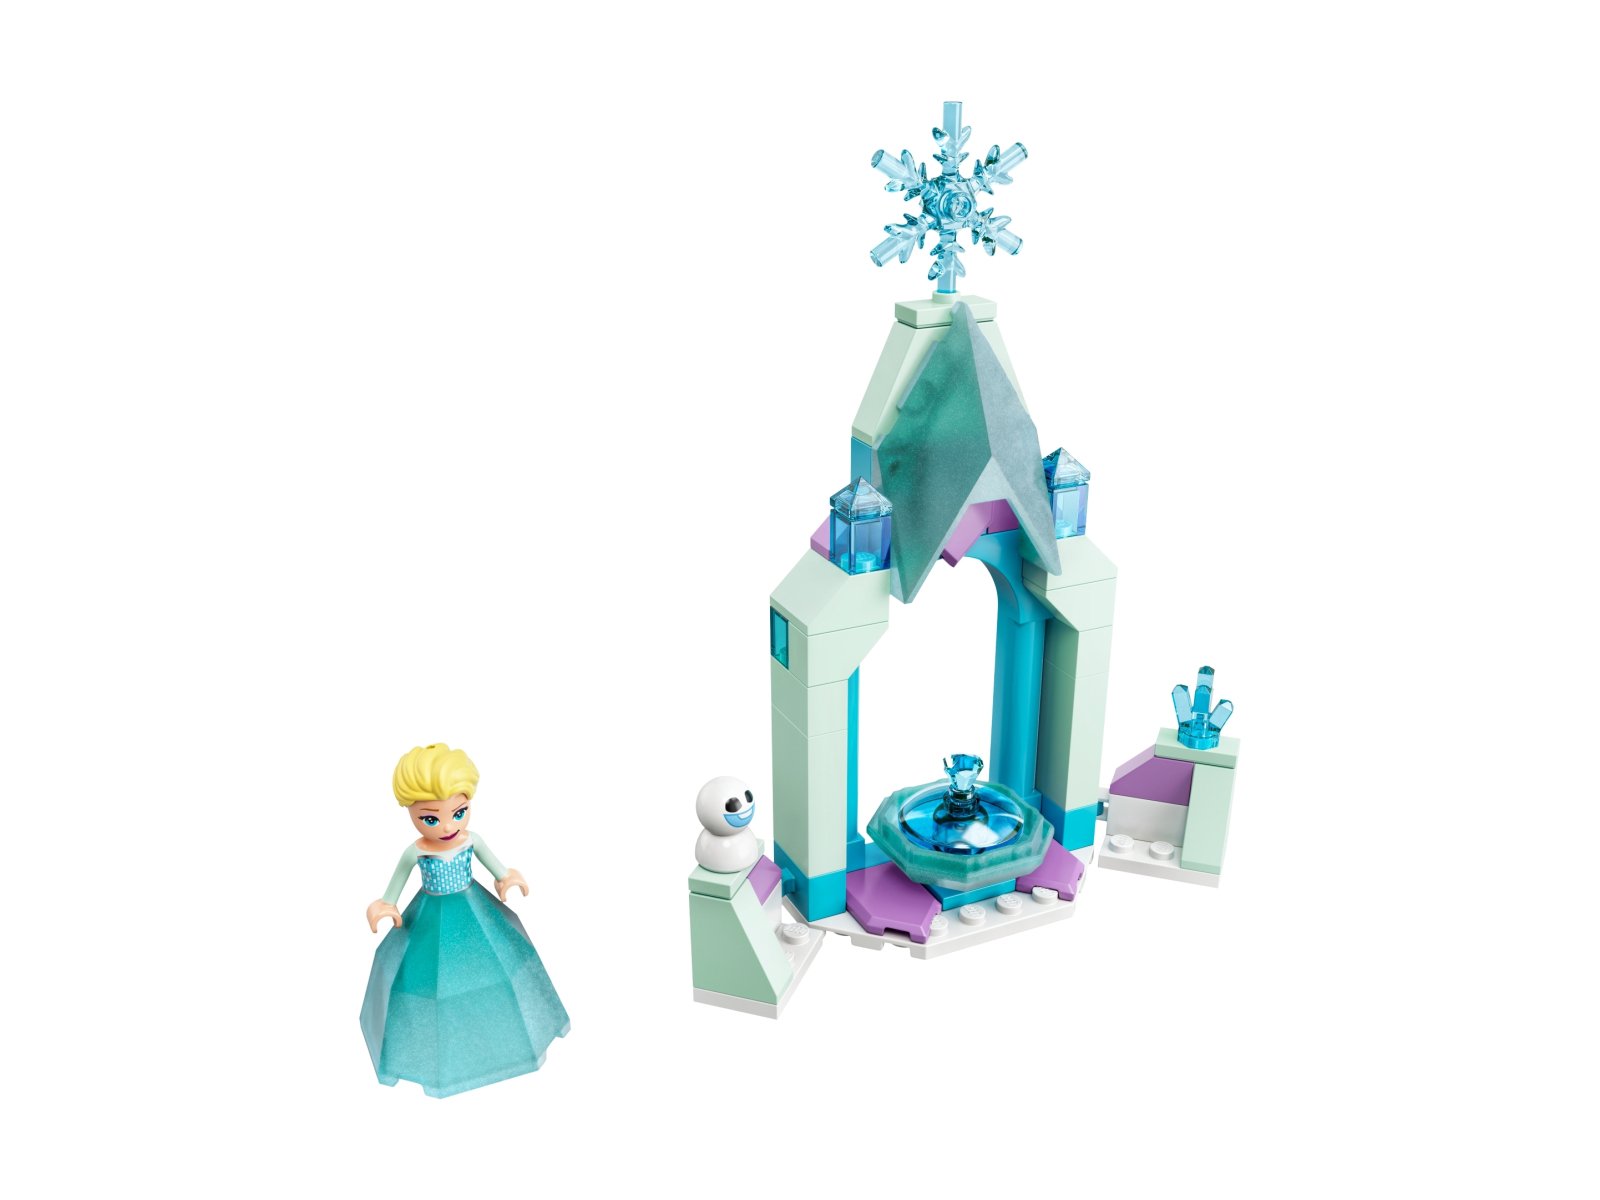 LEGO Disney 43199 Dziedziniec zamku Elzy